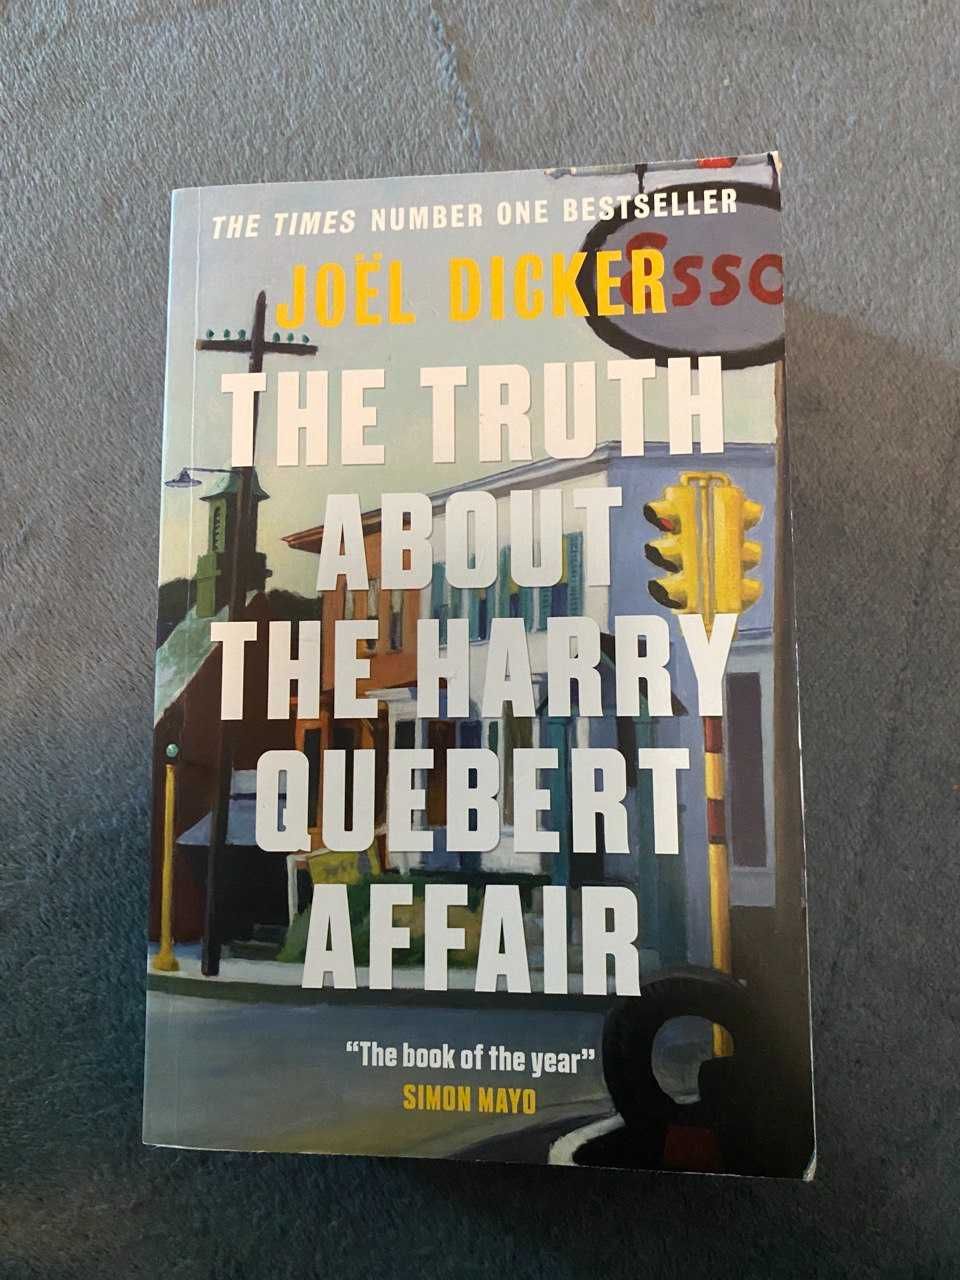 Художня книга Joel Dicker "The truth about the Harry Quebert affair"